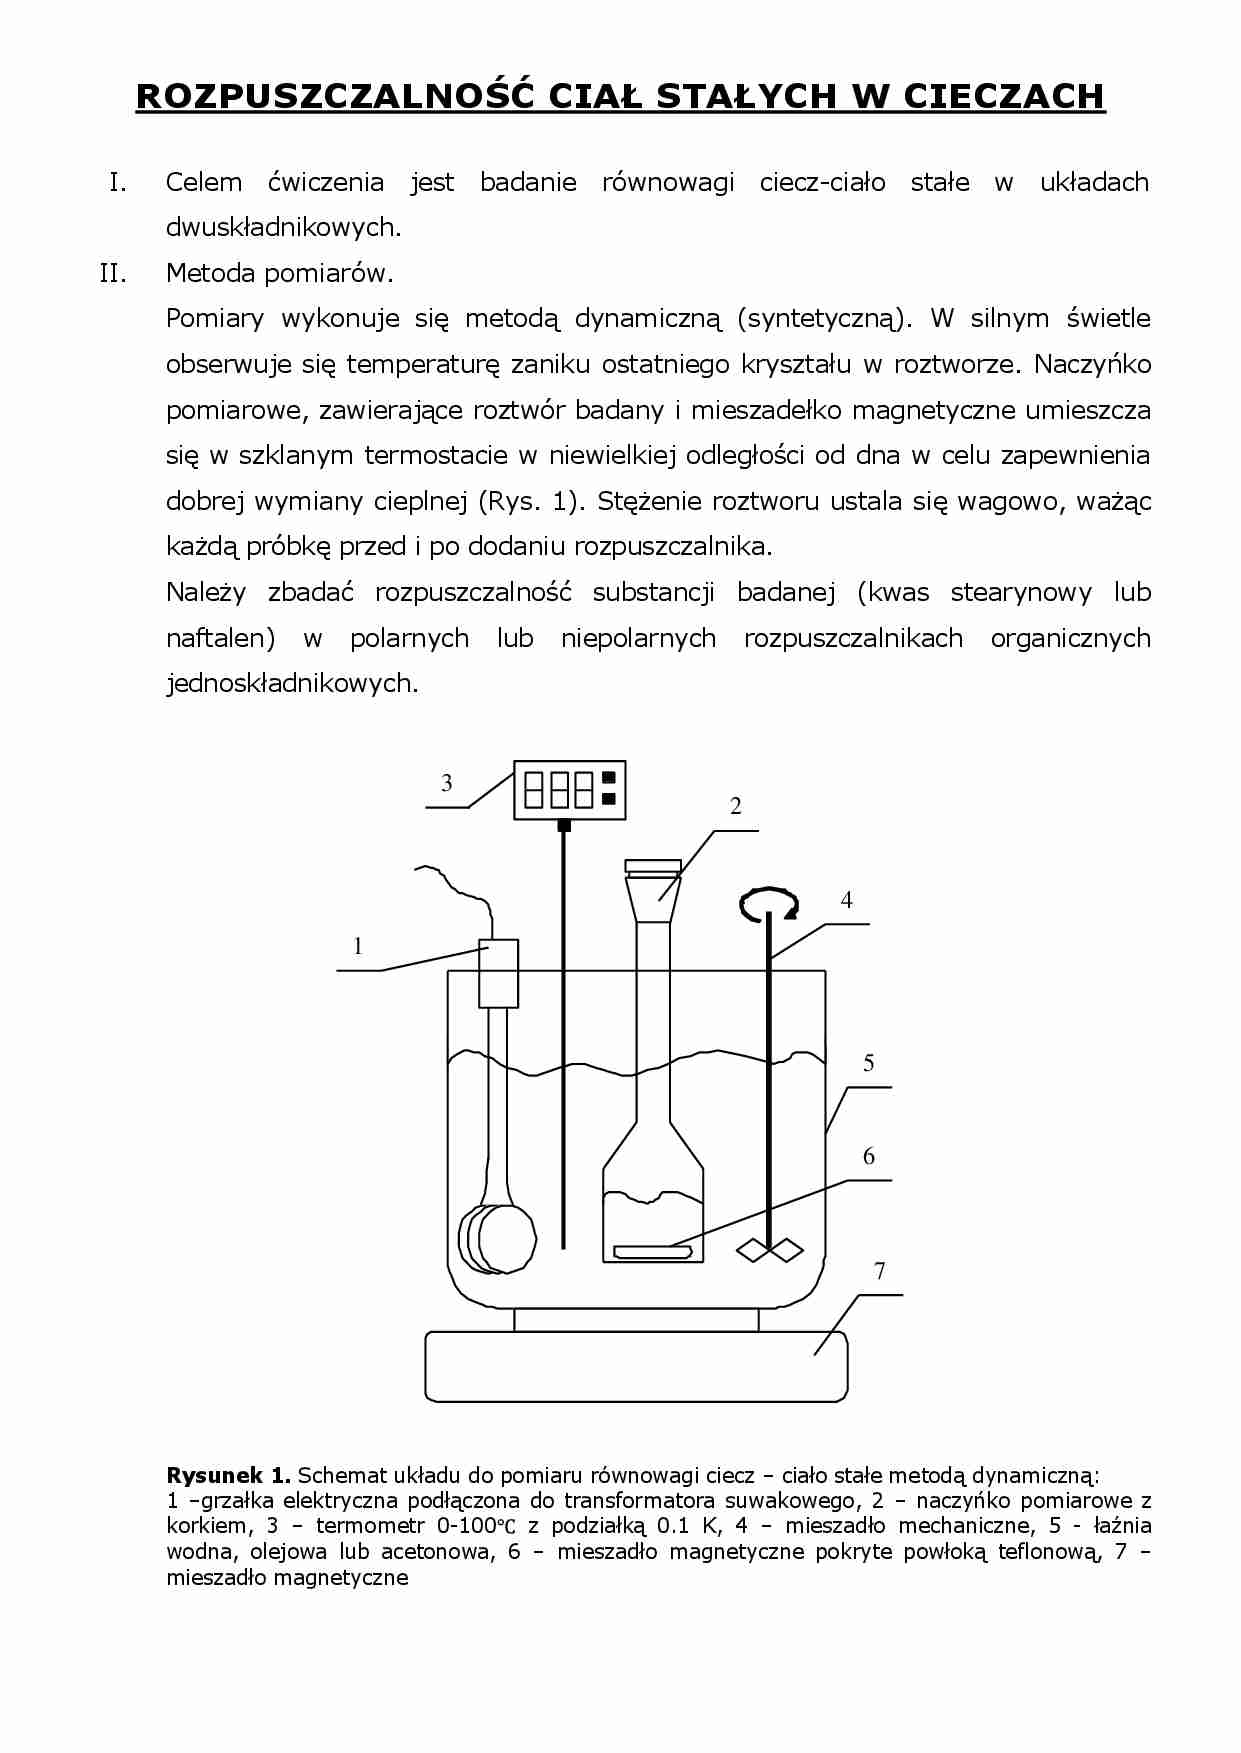 Rozpuszczalność ciał stałych w cieczach- instrukcje laboratoryjne - strona 1